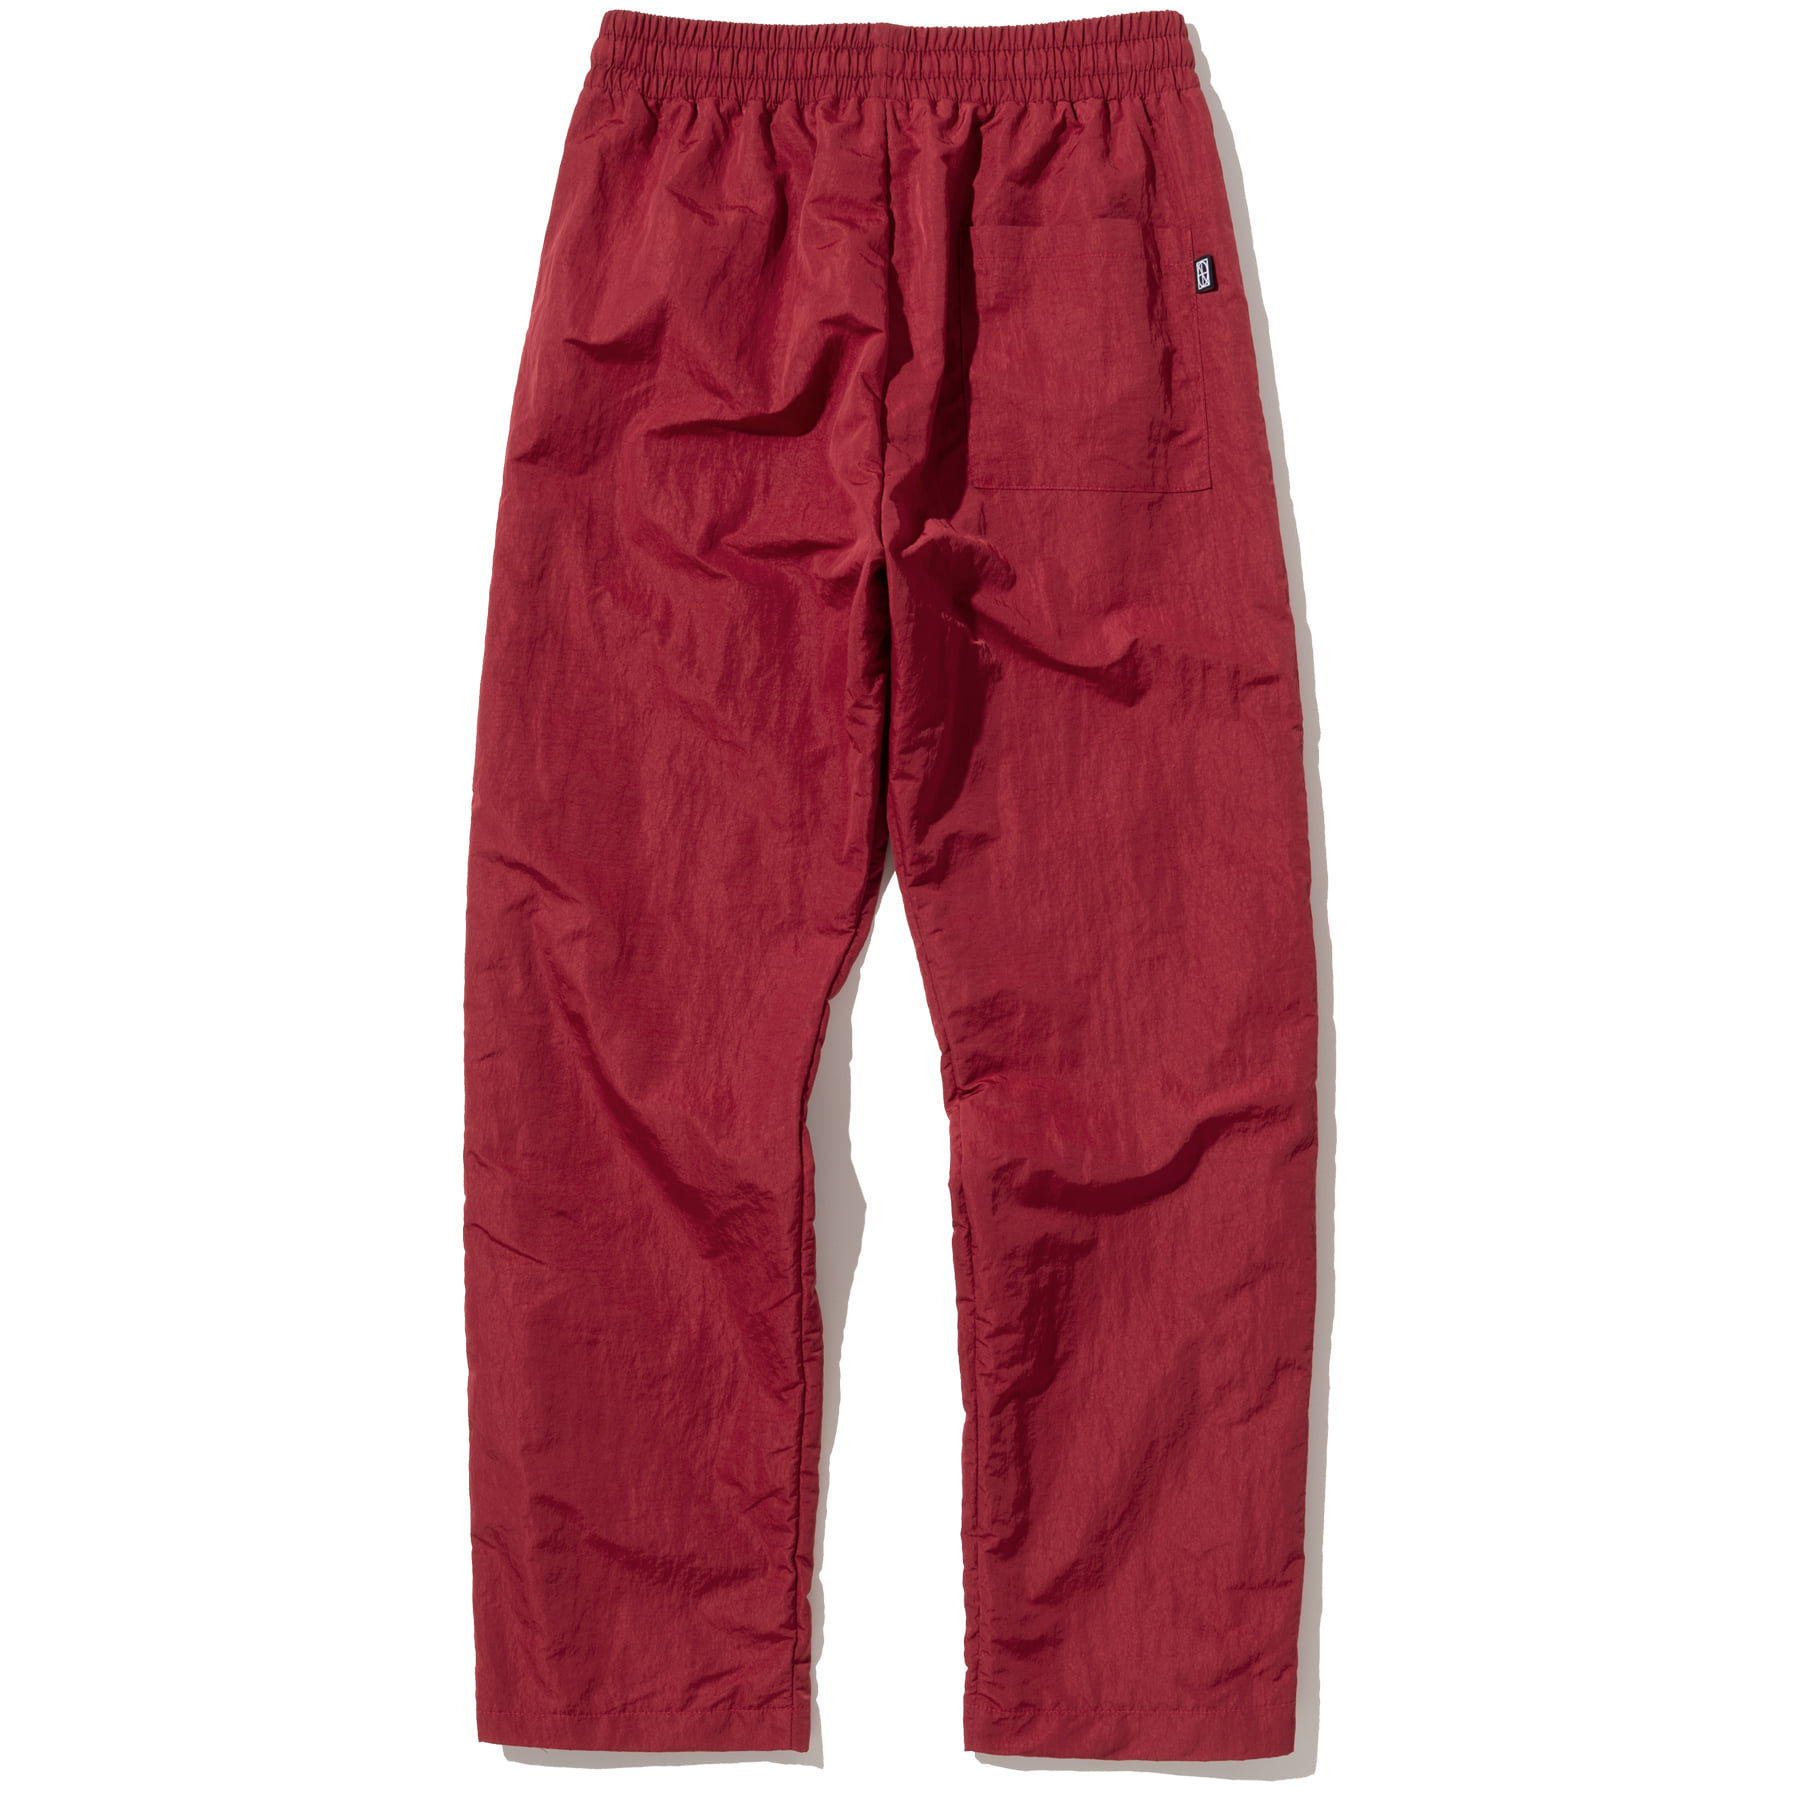 Two Way Side Zipper Nylon Pants - Red,NOT4NERD